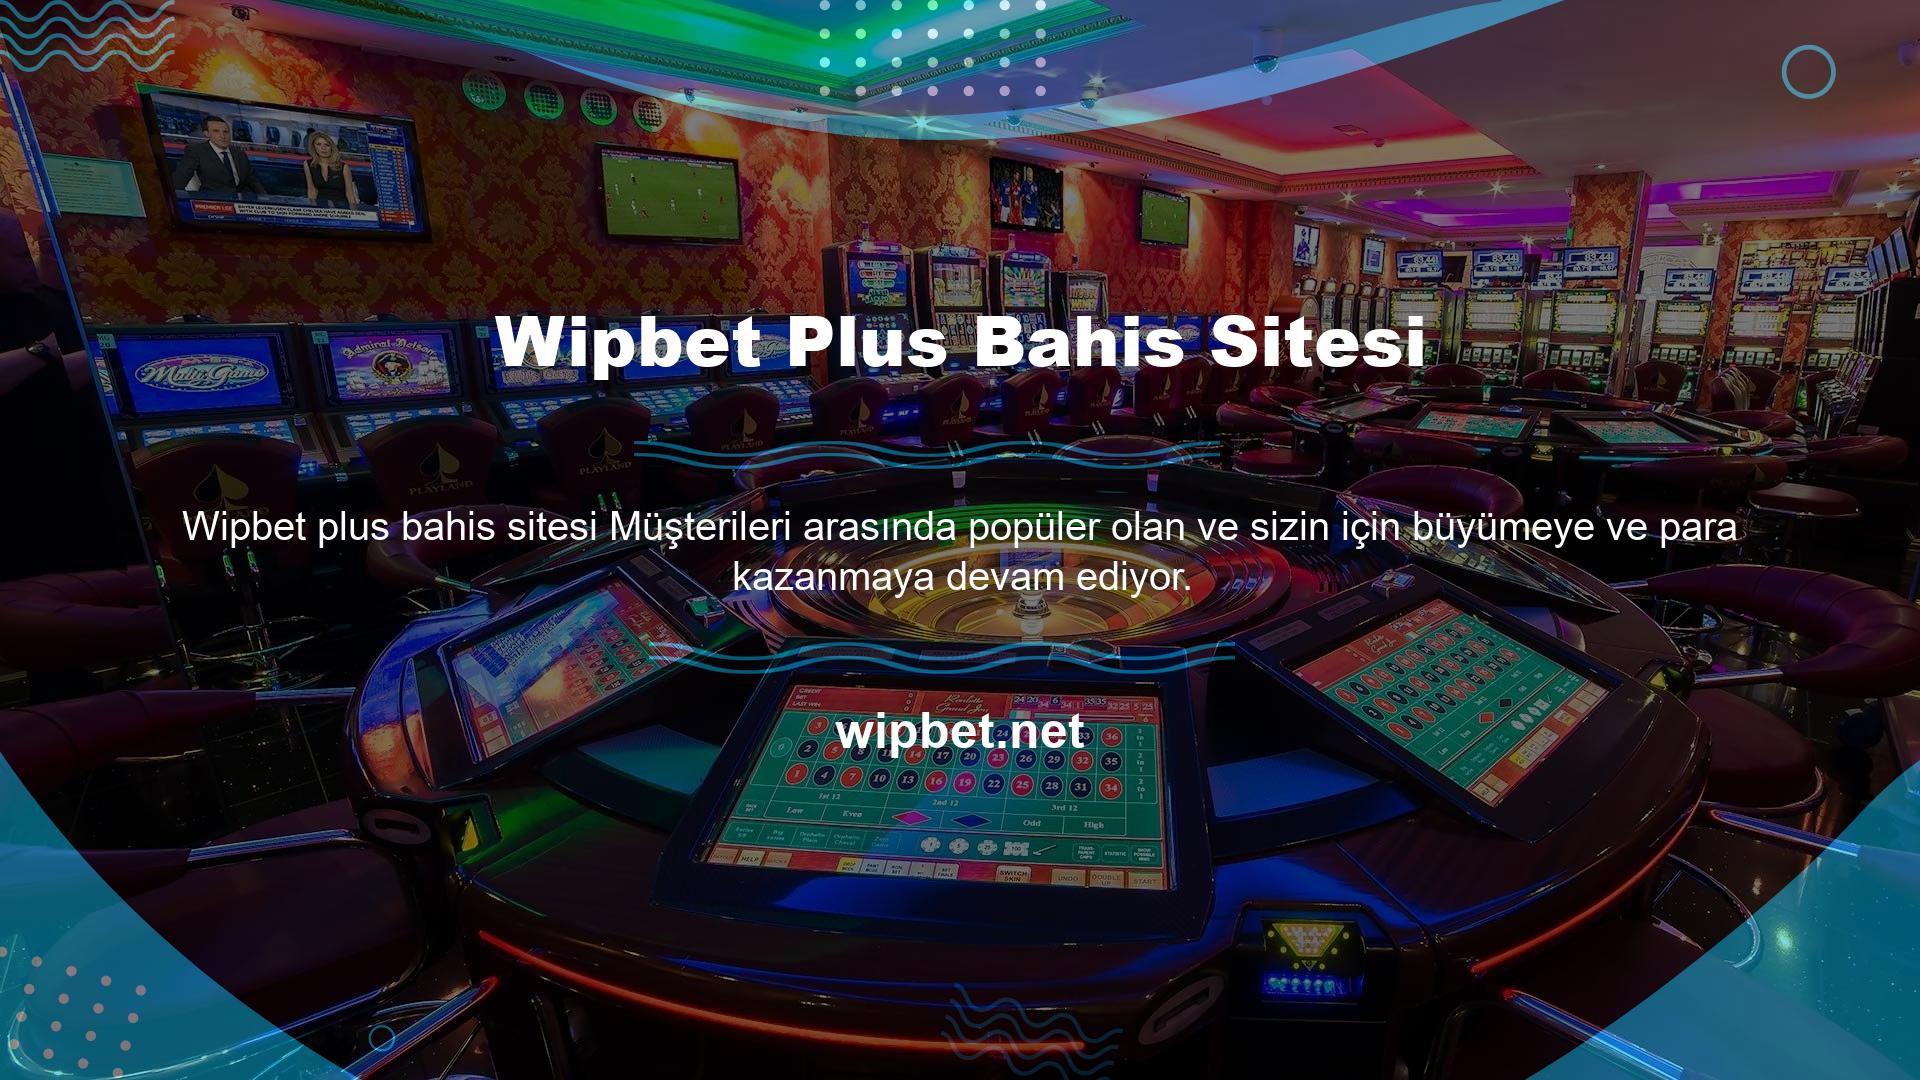 Wipbet, yeni özellikler ekleyen ve bu şekilde faaliyetler sağlayan yasa dışı sitelerden biridir